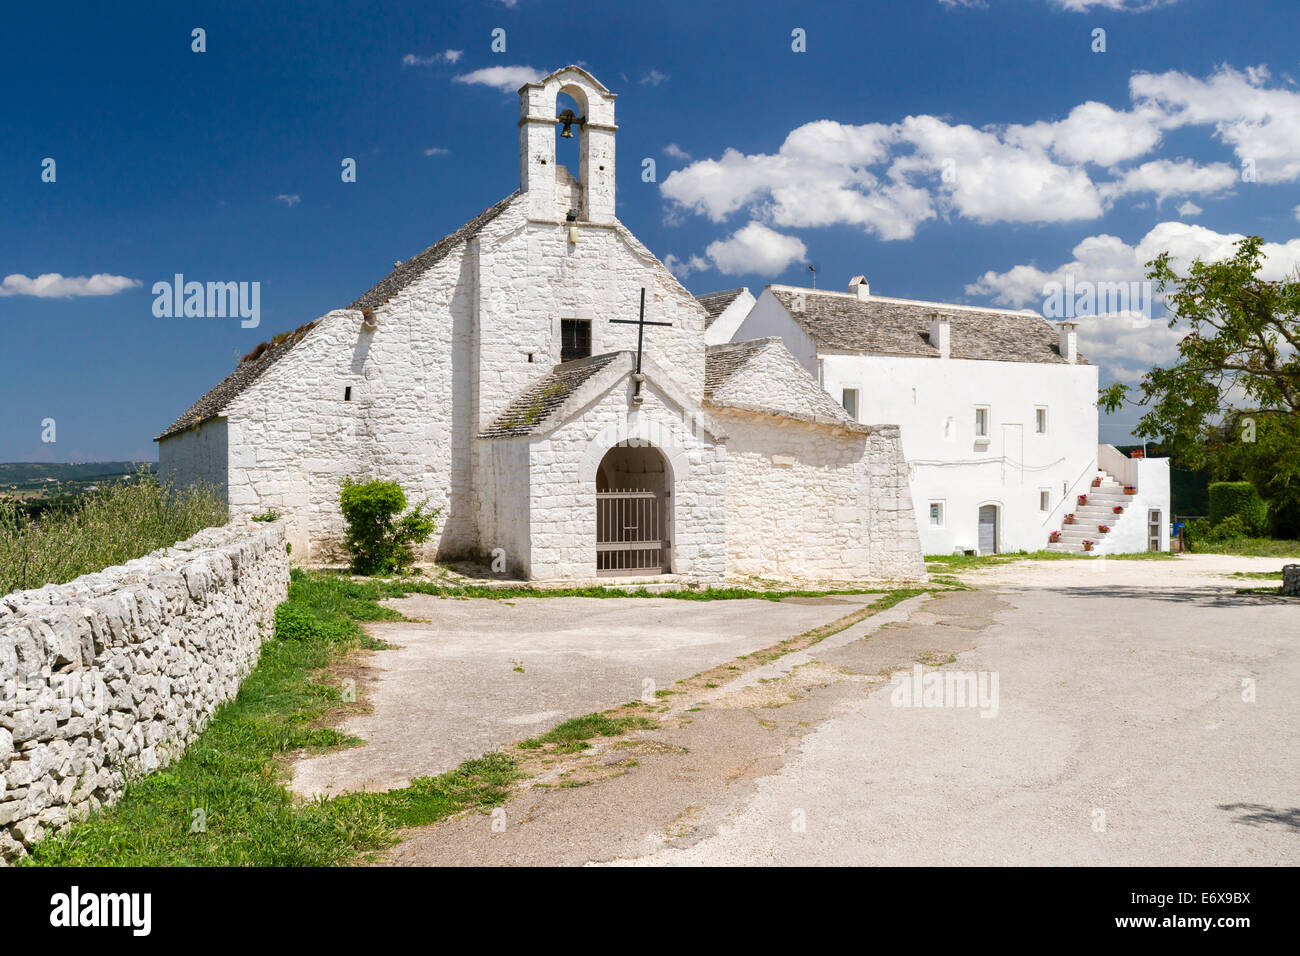 Chiesa di Santa Maria di Barsento, 6th century church, Noci, Barsento, Valle d'Itria, Bari province, Apulia, Italy Stock Photo